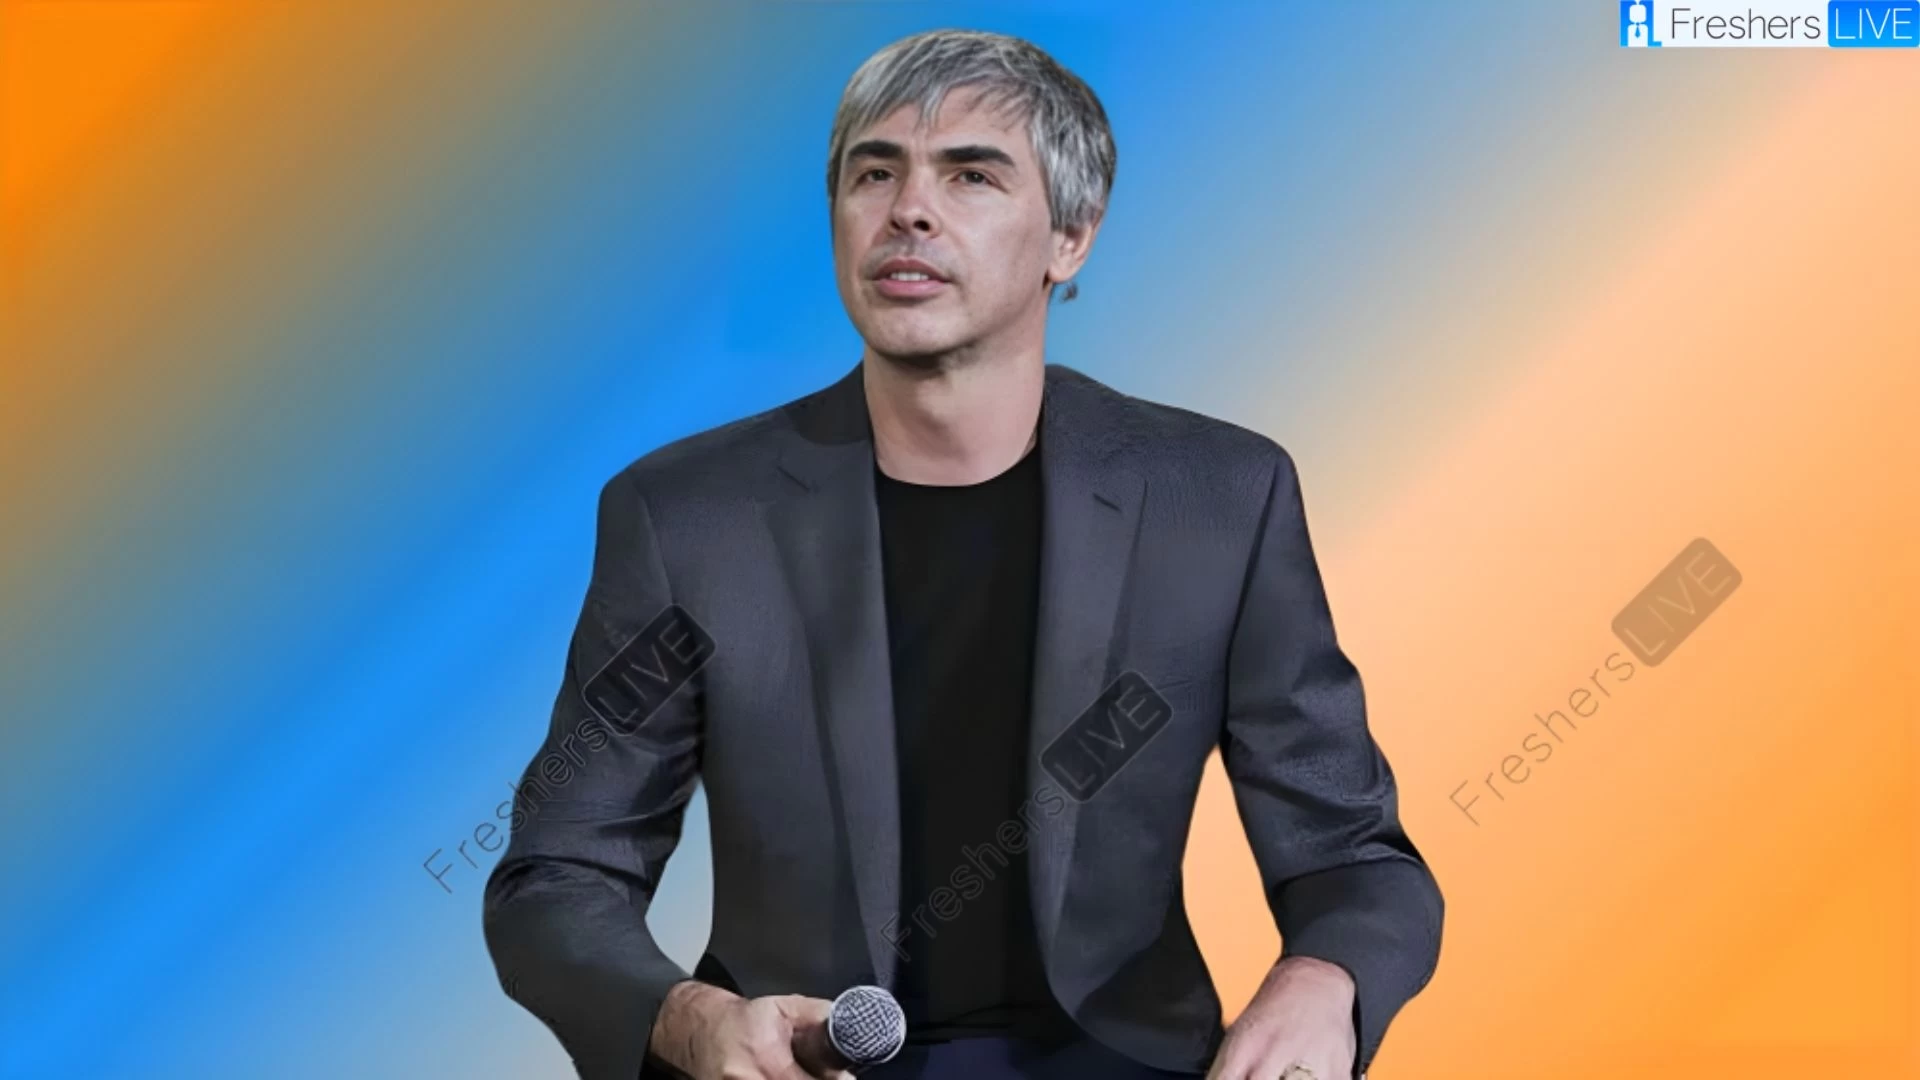 Etnia de Larry Page, ¿Cuál es la etnia de Larry Page?